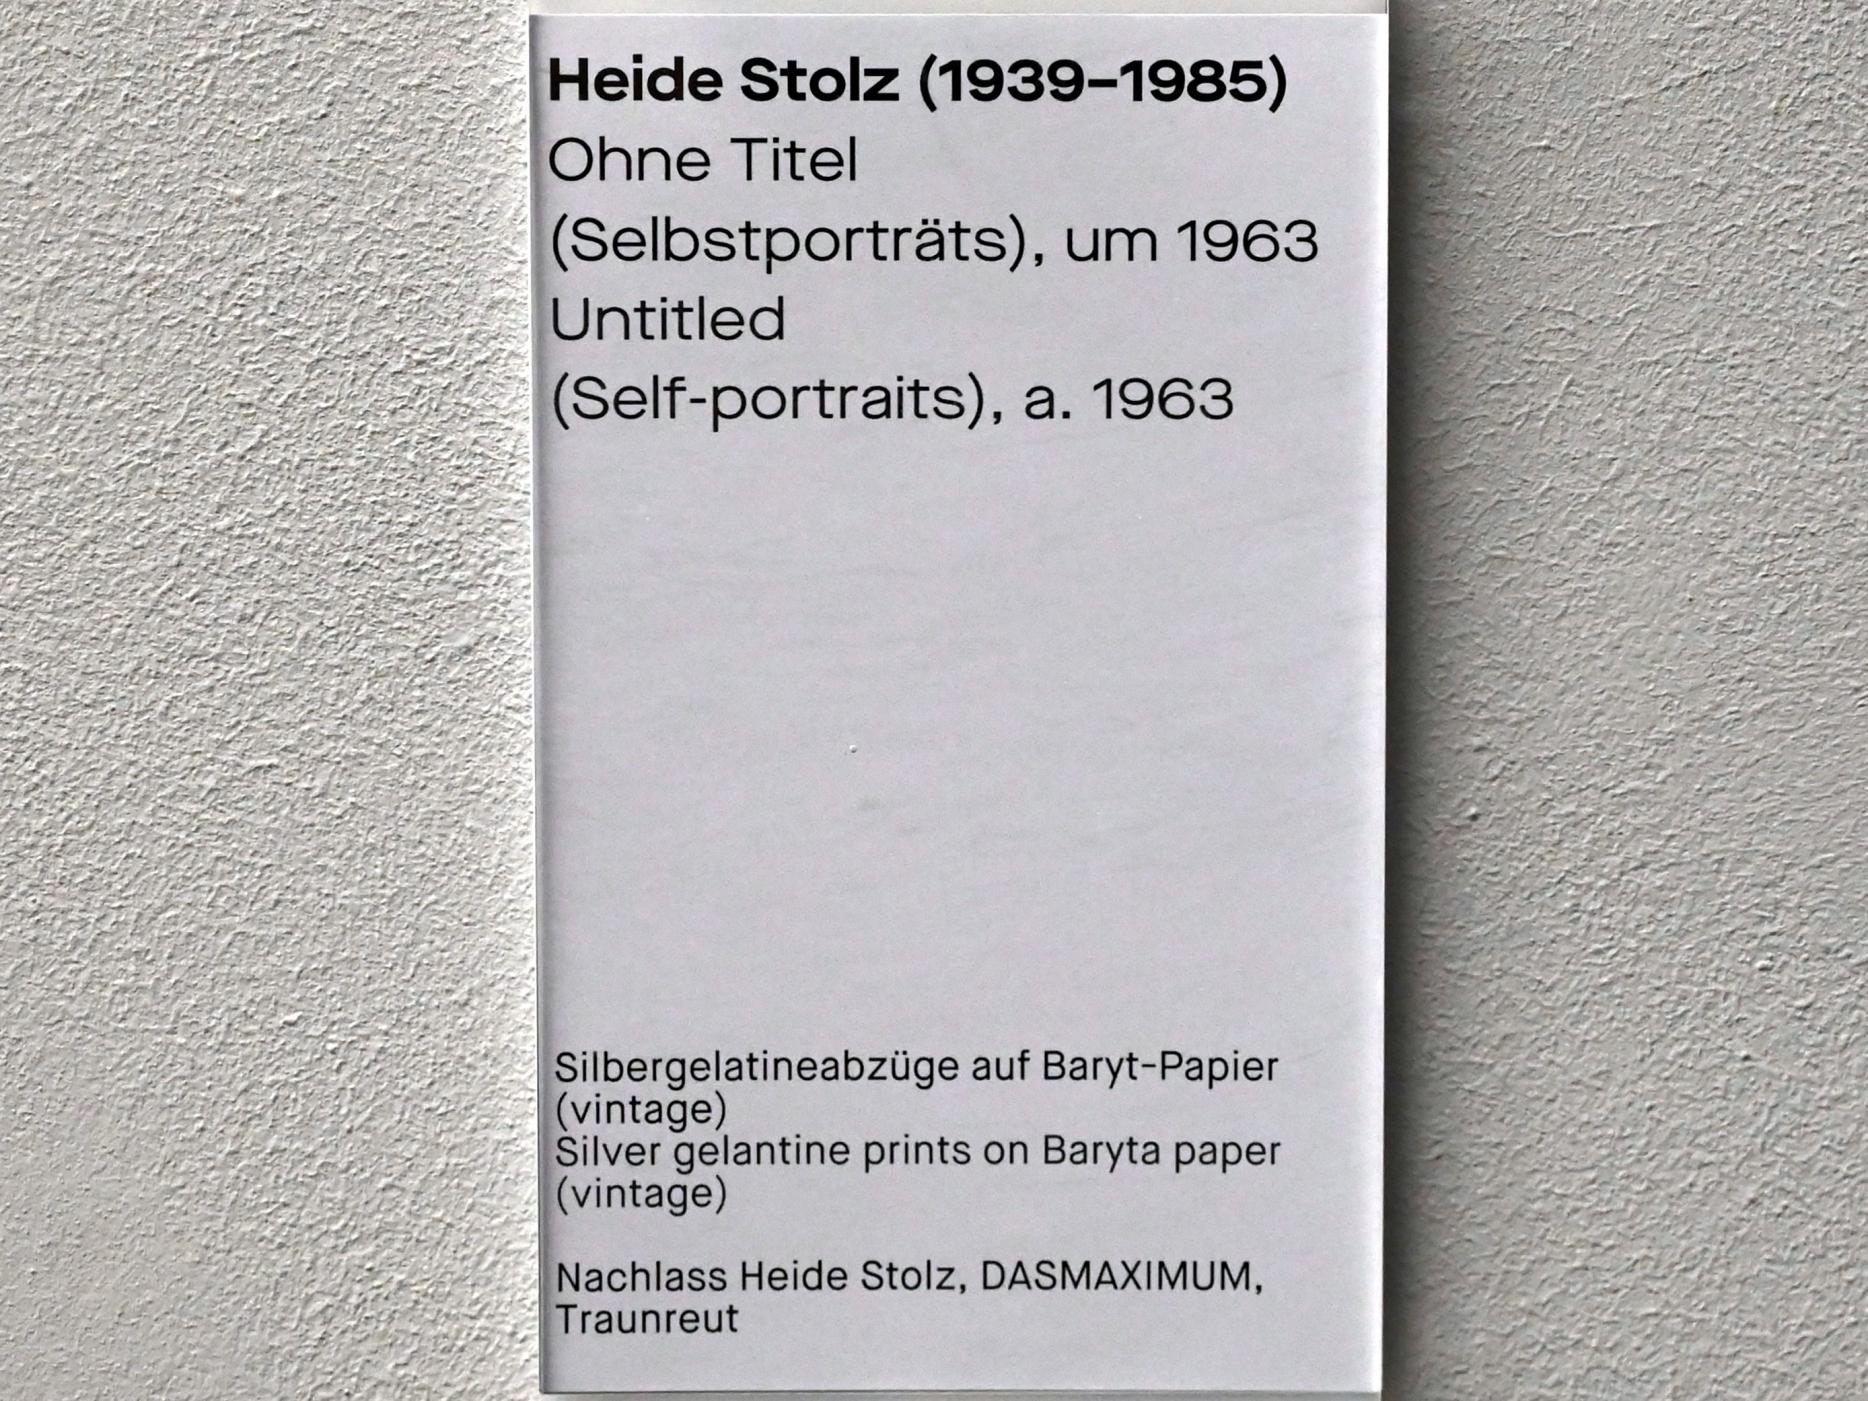 Heide Stolz (1960–1969), Ohne Titel (Selbstporträt), Chemnitz, Museum Gunzenhauser, Saal 1.1 - Uwe Lausen und Heide Stolz, um 1963, Bild 2/2